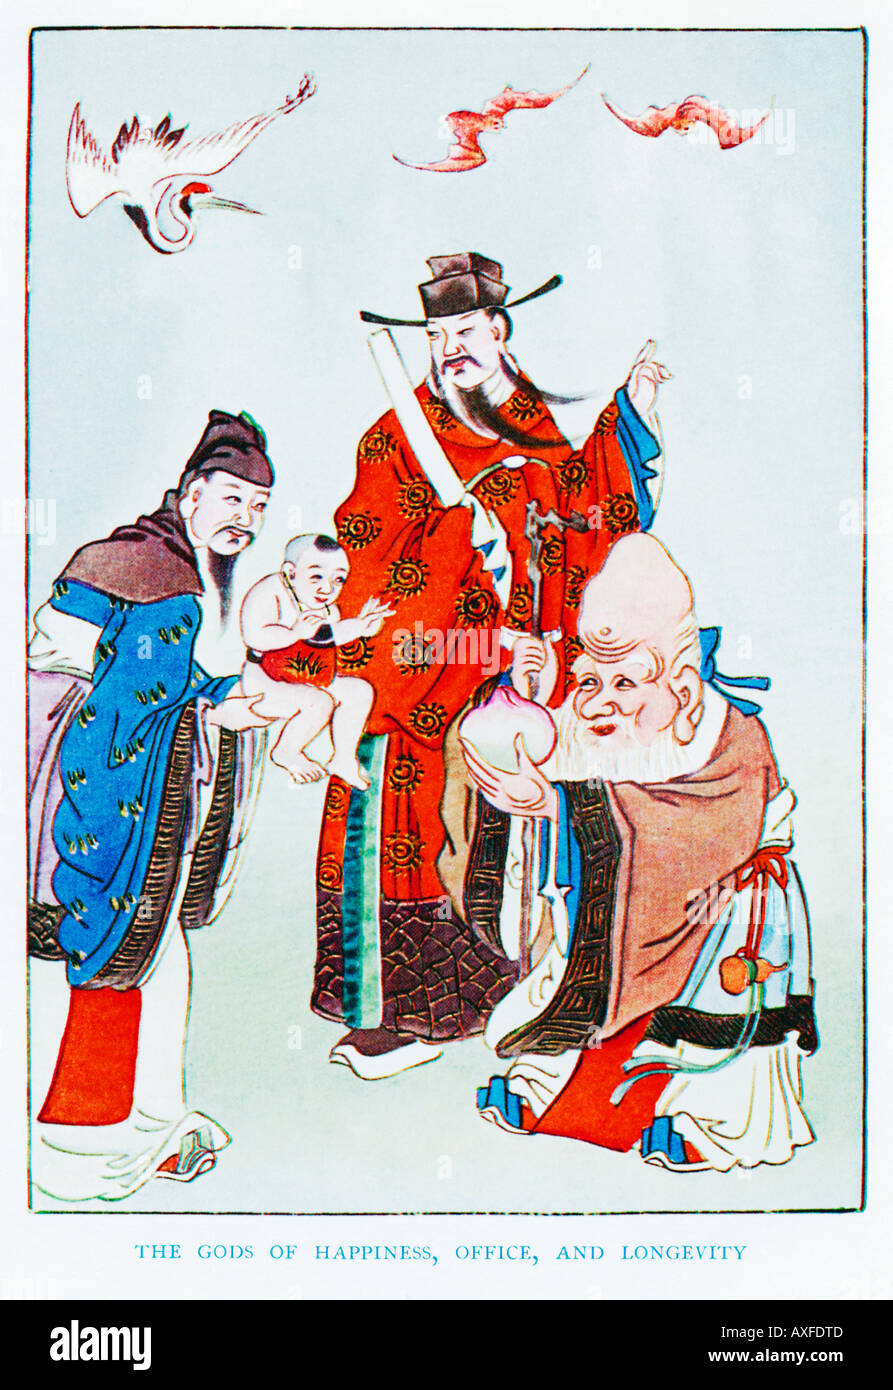 Gli dèi di felicità Ufficio e longevità Fu Shen Tsai Shen Shou Hsing 1920s illustrazione di un artista cinese Foto Stock